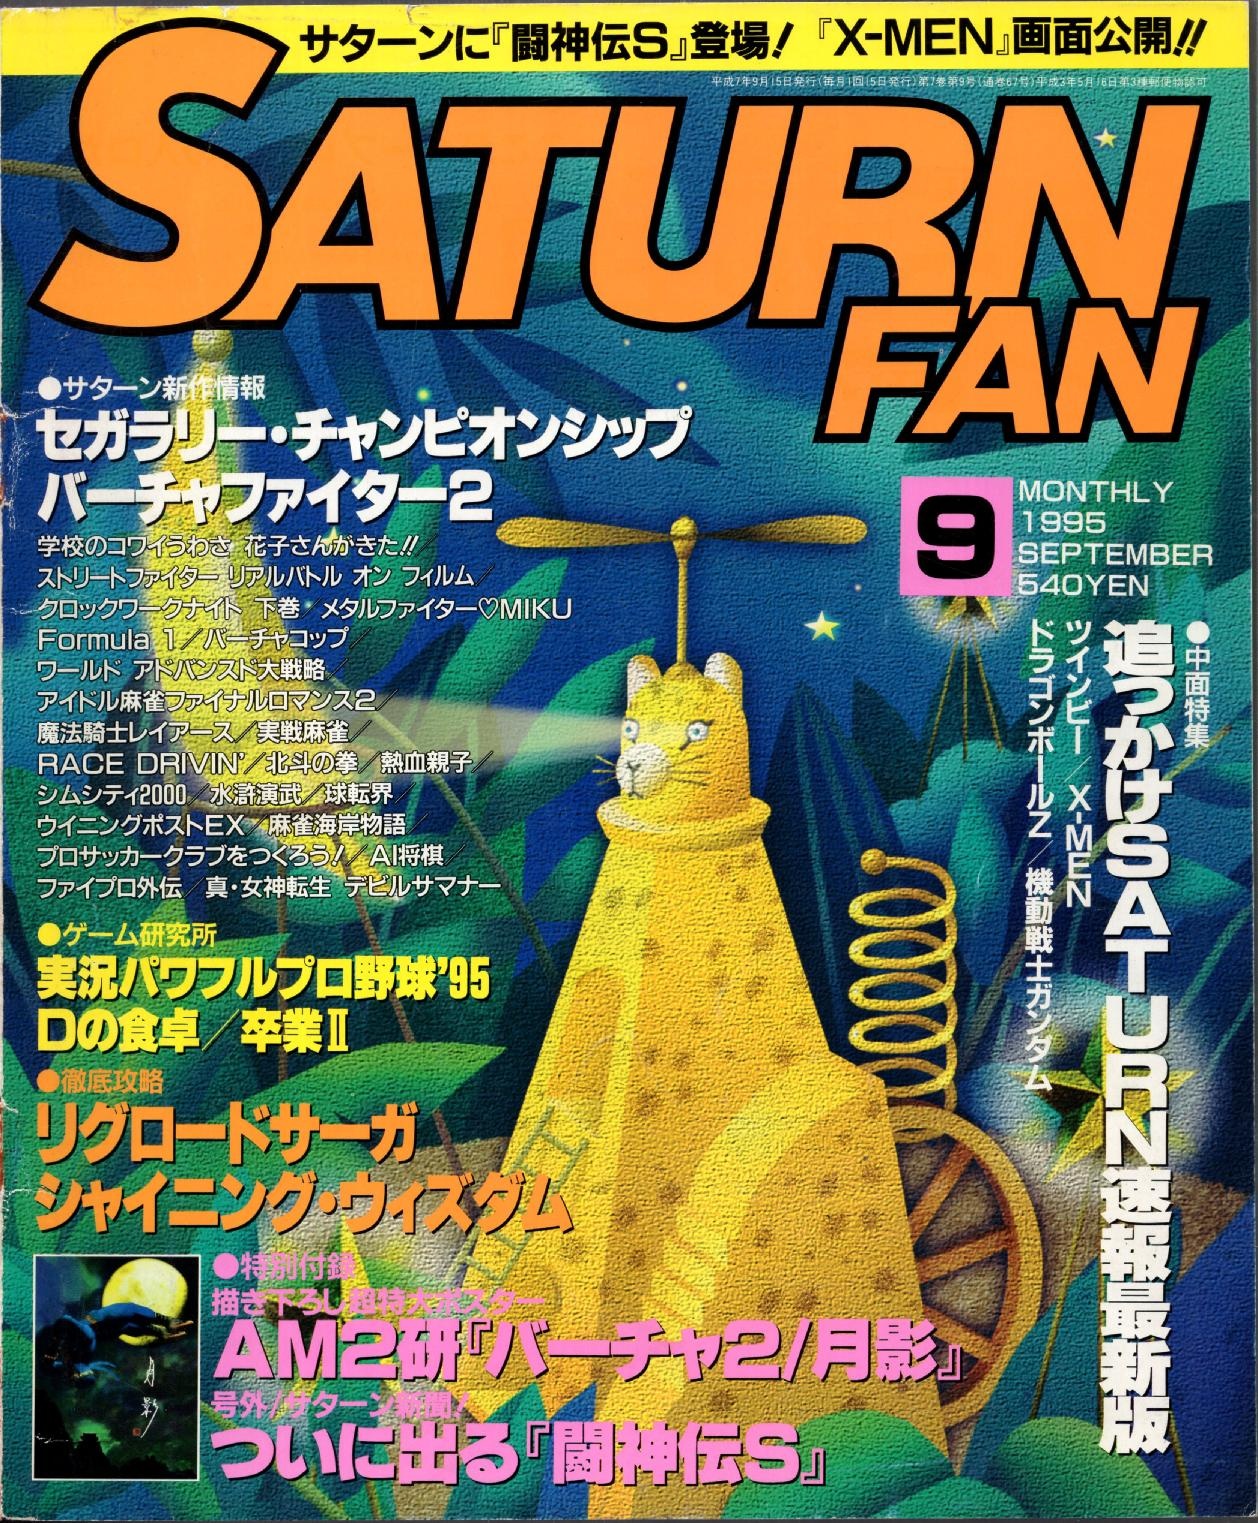 SaturnFan JP 1995-09 19950915.pdf